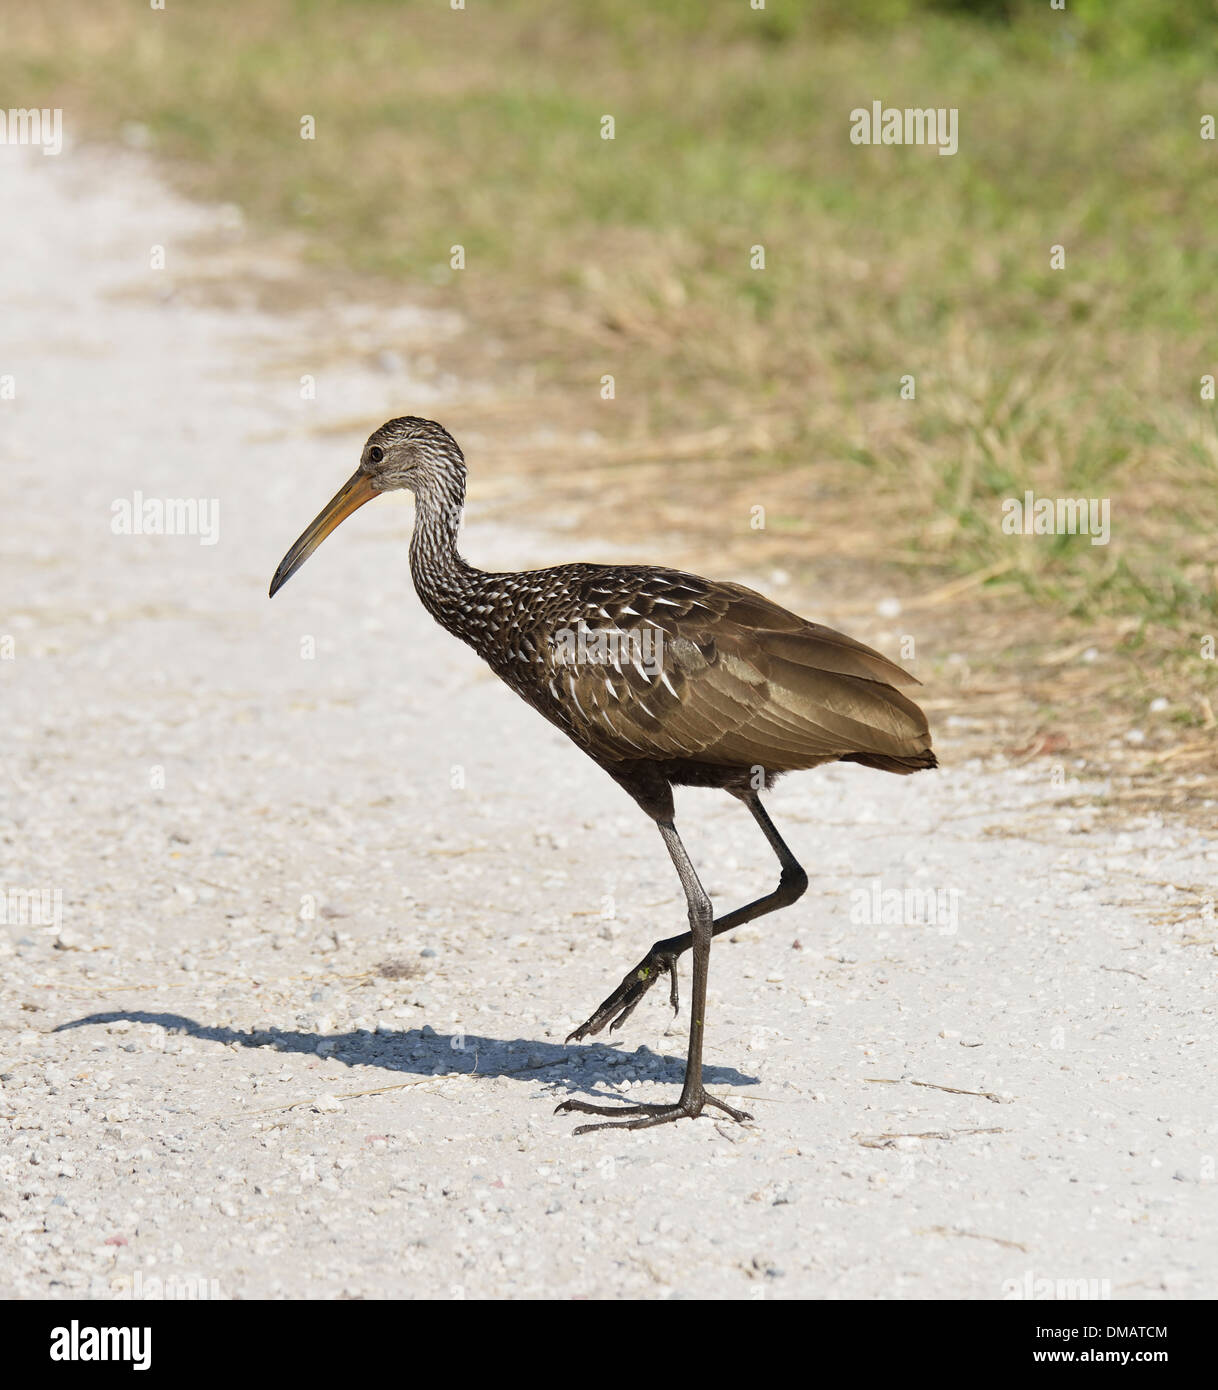 Oiseau Limpkin traversant une route de terre Banque D'Images